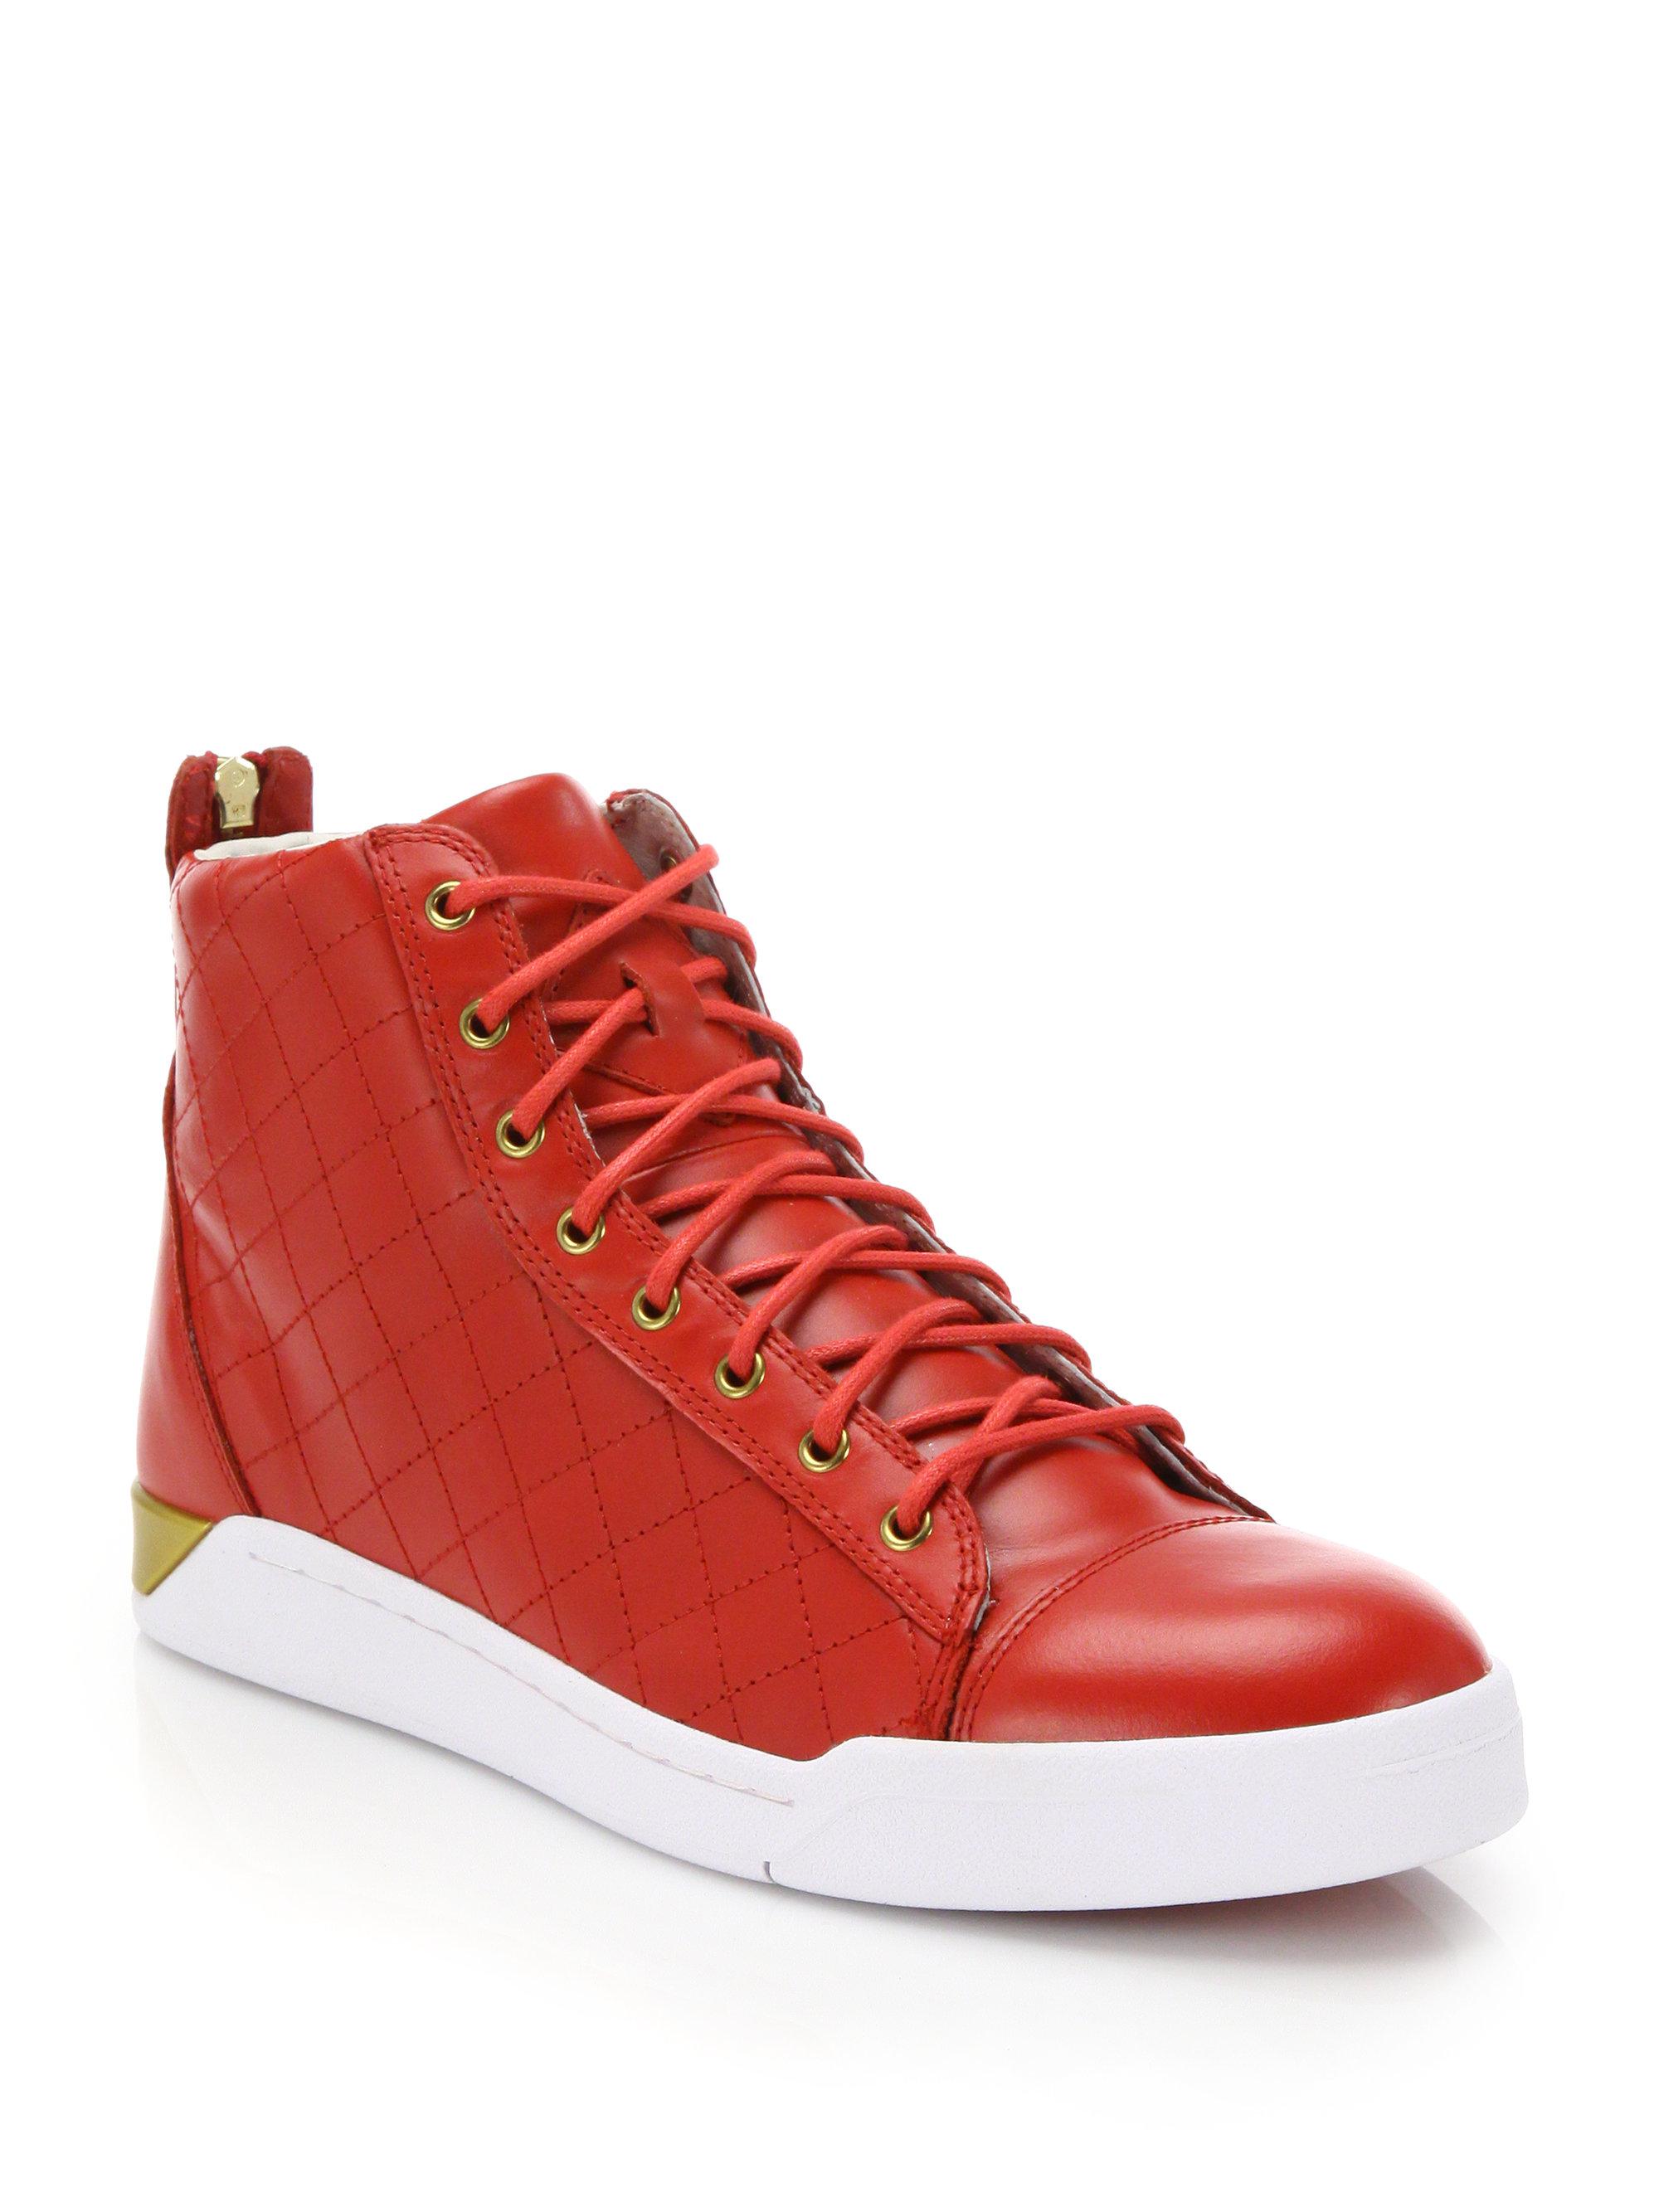 DIESEL Tempus Diamond Leather High-top Sneakers in Red - Lyst